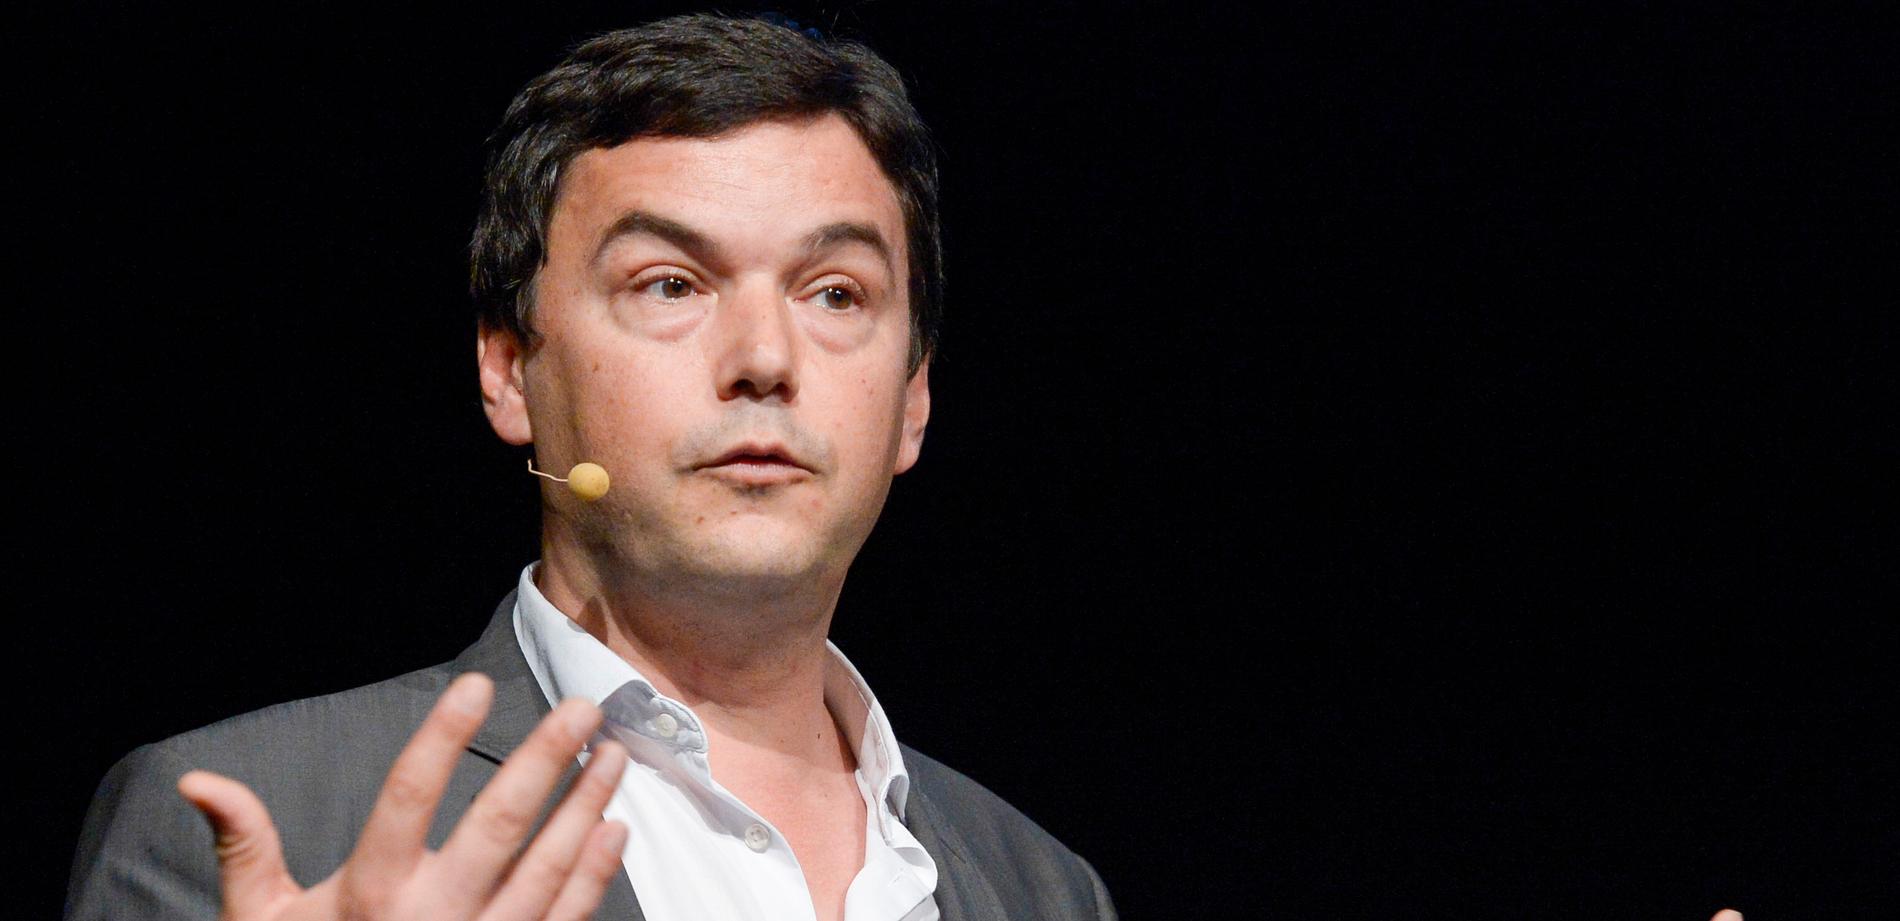 Den franske ekonomen Thomas Pikettys senaste bok ”Capital et idéologie” (Kapital och ideologi) kommer ut i flera översättningar under året.